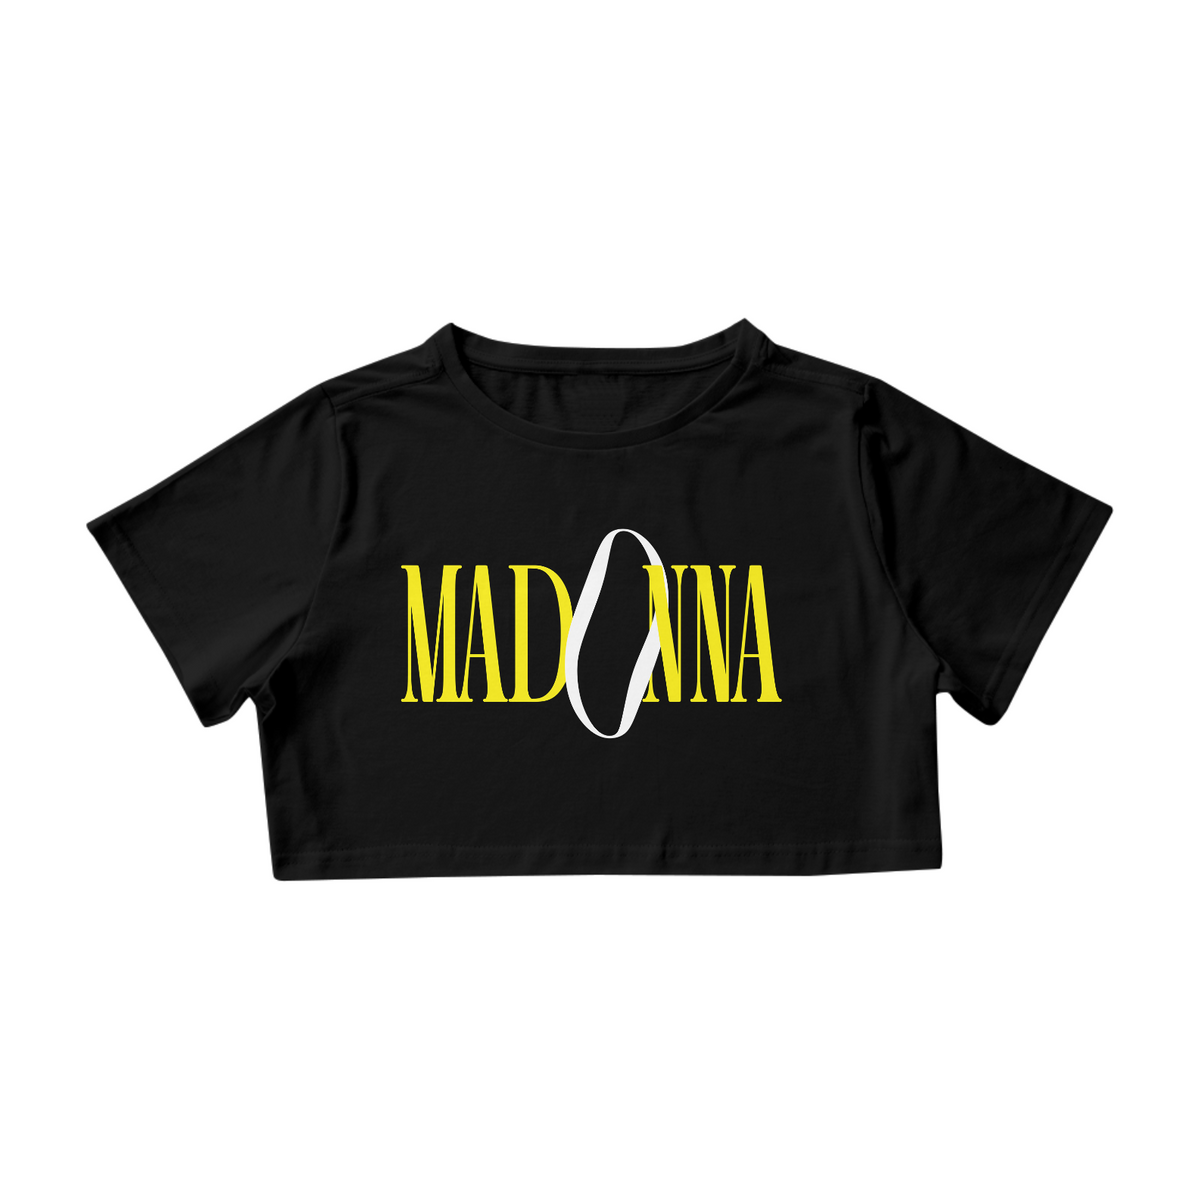 Nome do produto: Cropped Madonna - The Celebration Tour